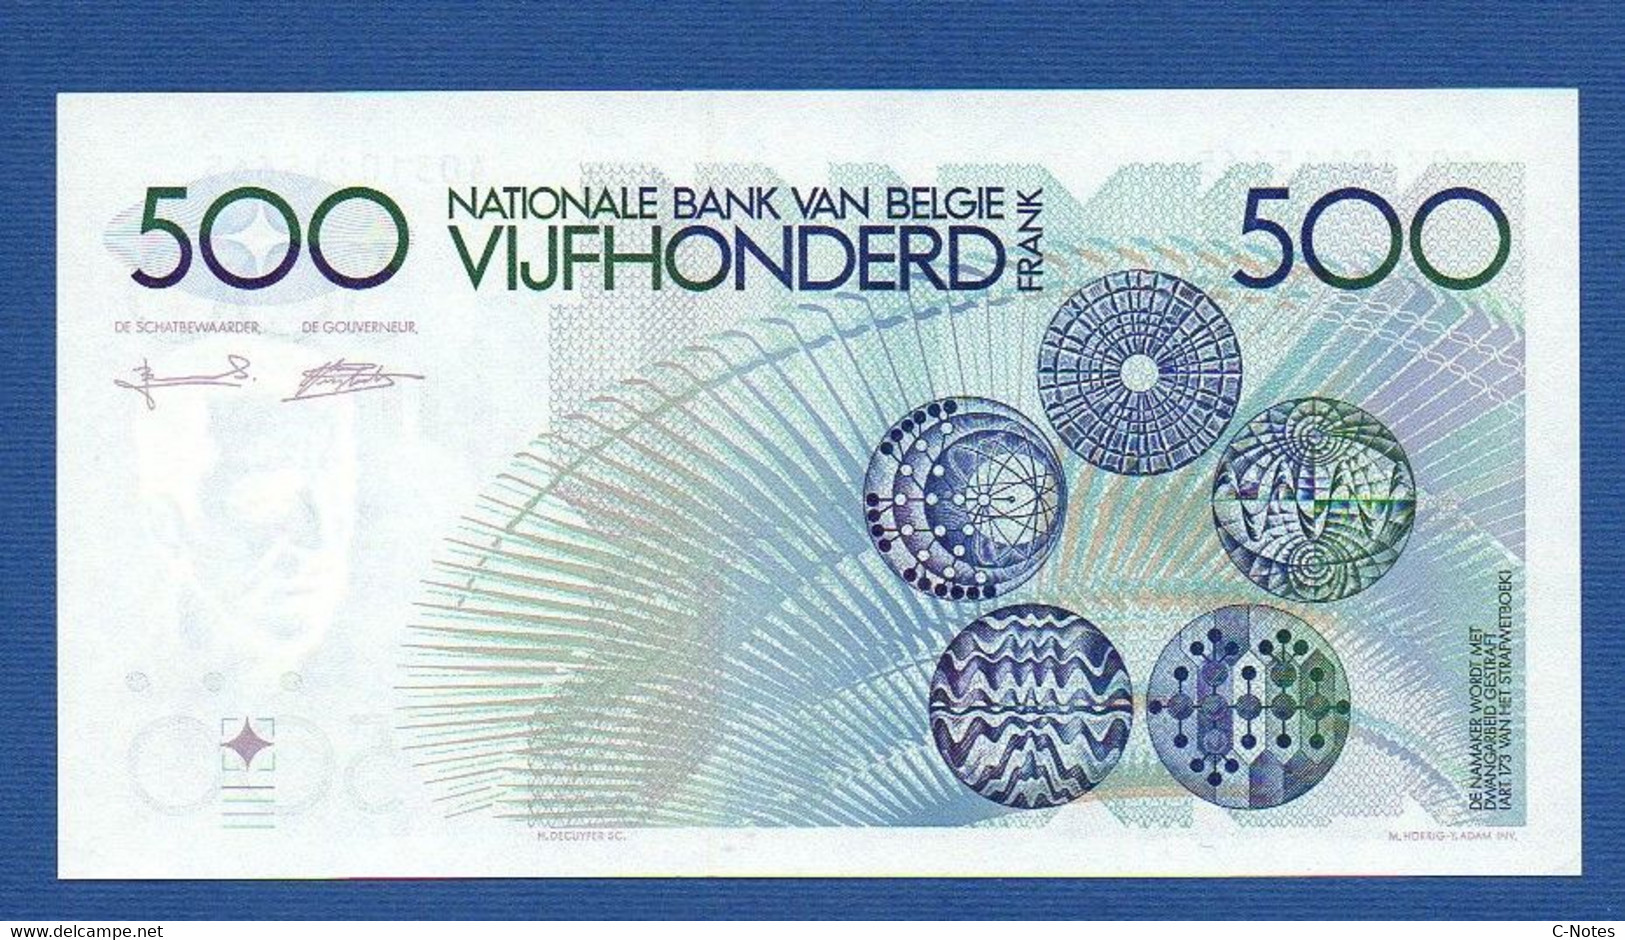 BELGIUM - P.143a(7) - 500 Francs 1982-1998 UNC-, Serie 40310115665 - 500 Franchi